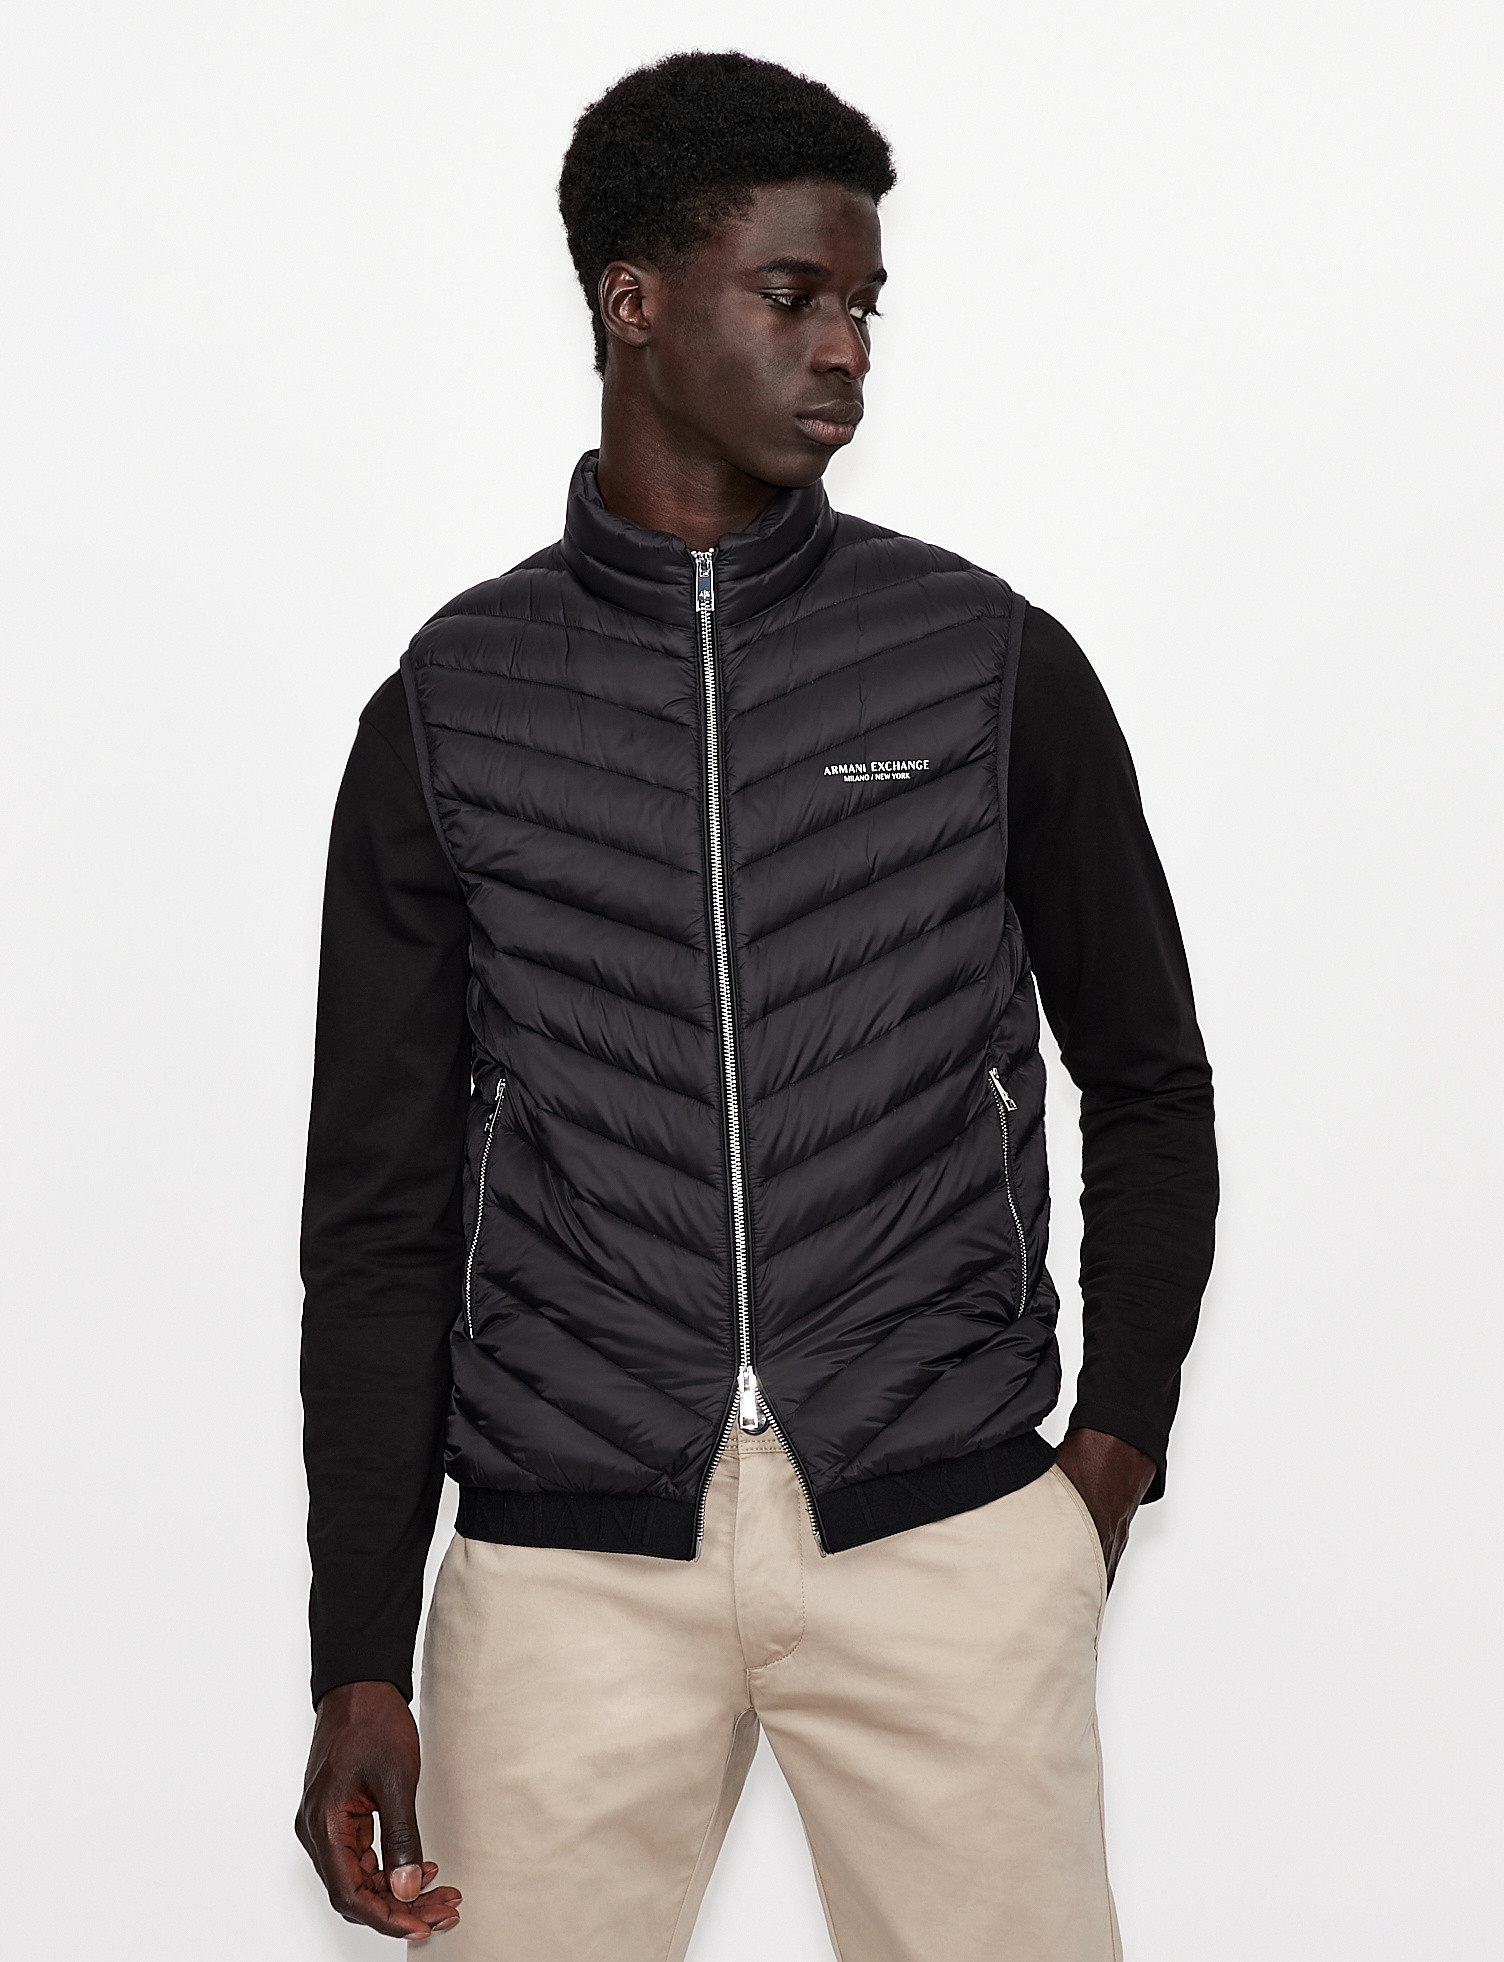 Armani Exchange - Padded sleeveless down jacket, Black, large image number 2